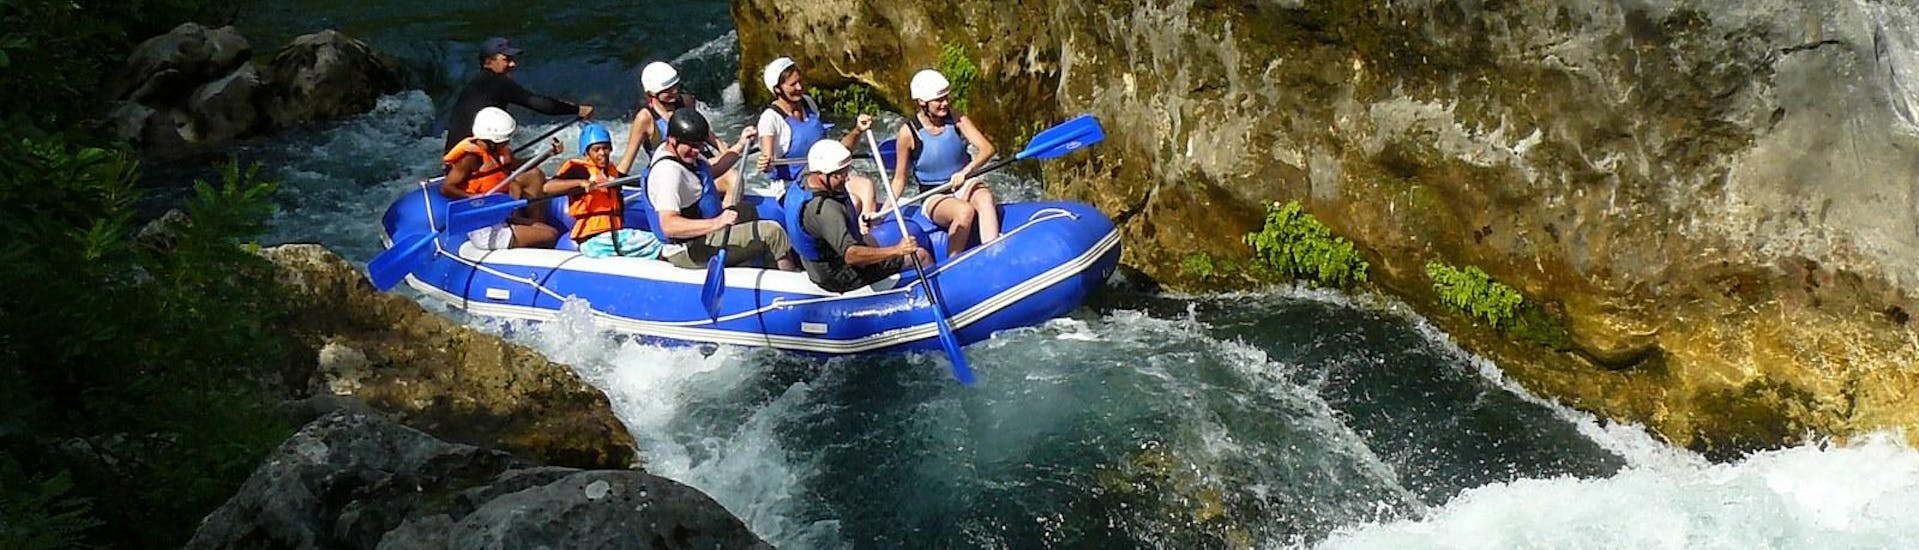 Un grupo de jóvenes disfrutando de su tour de rafting clásico en el río Cetina, junto al experimentado equipo de Croatia Rafting.